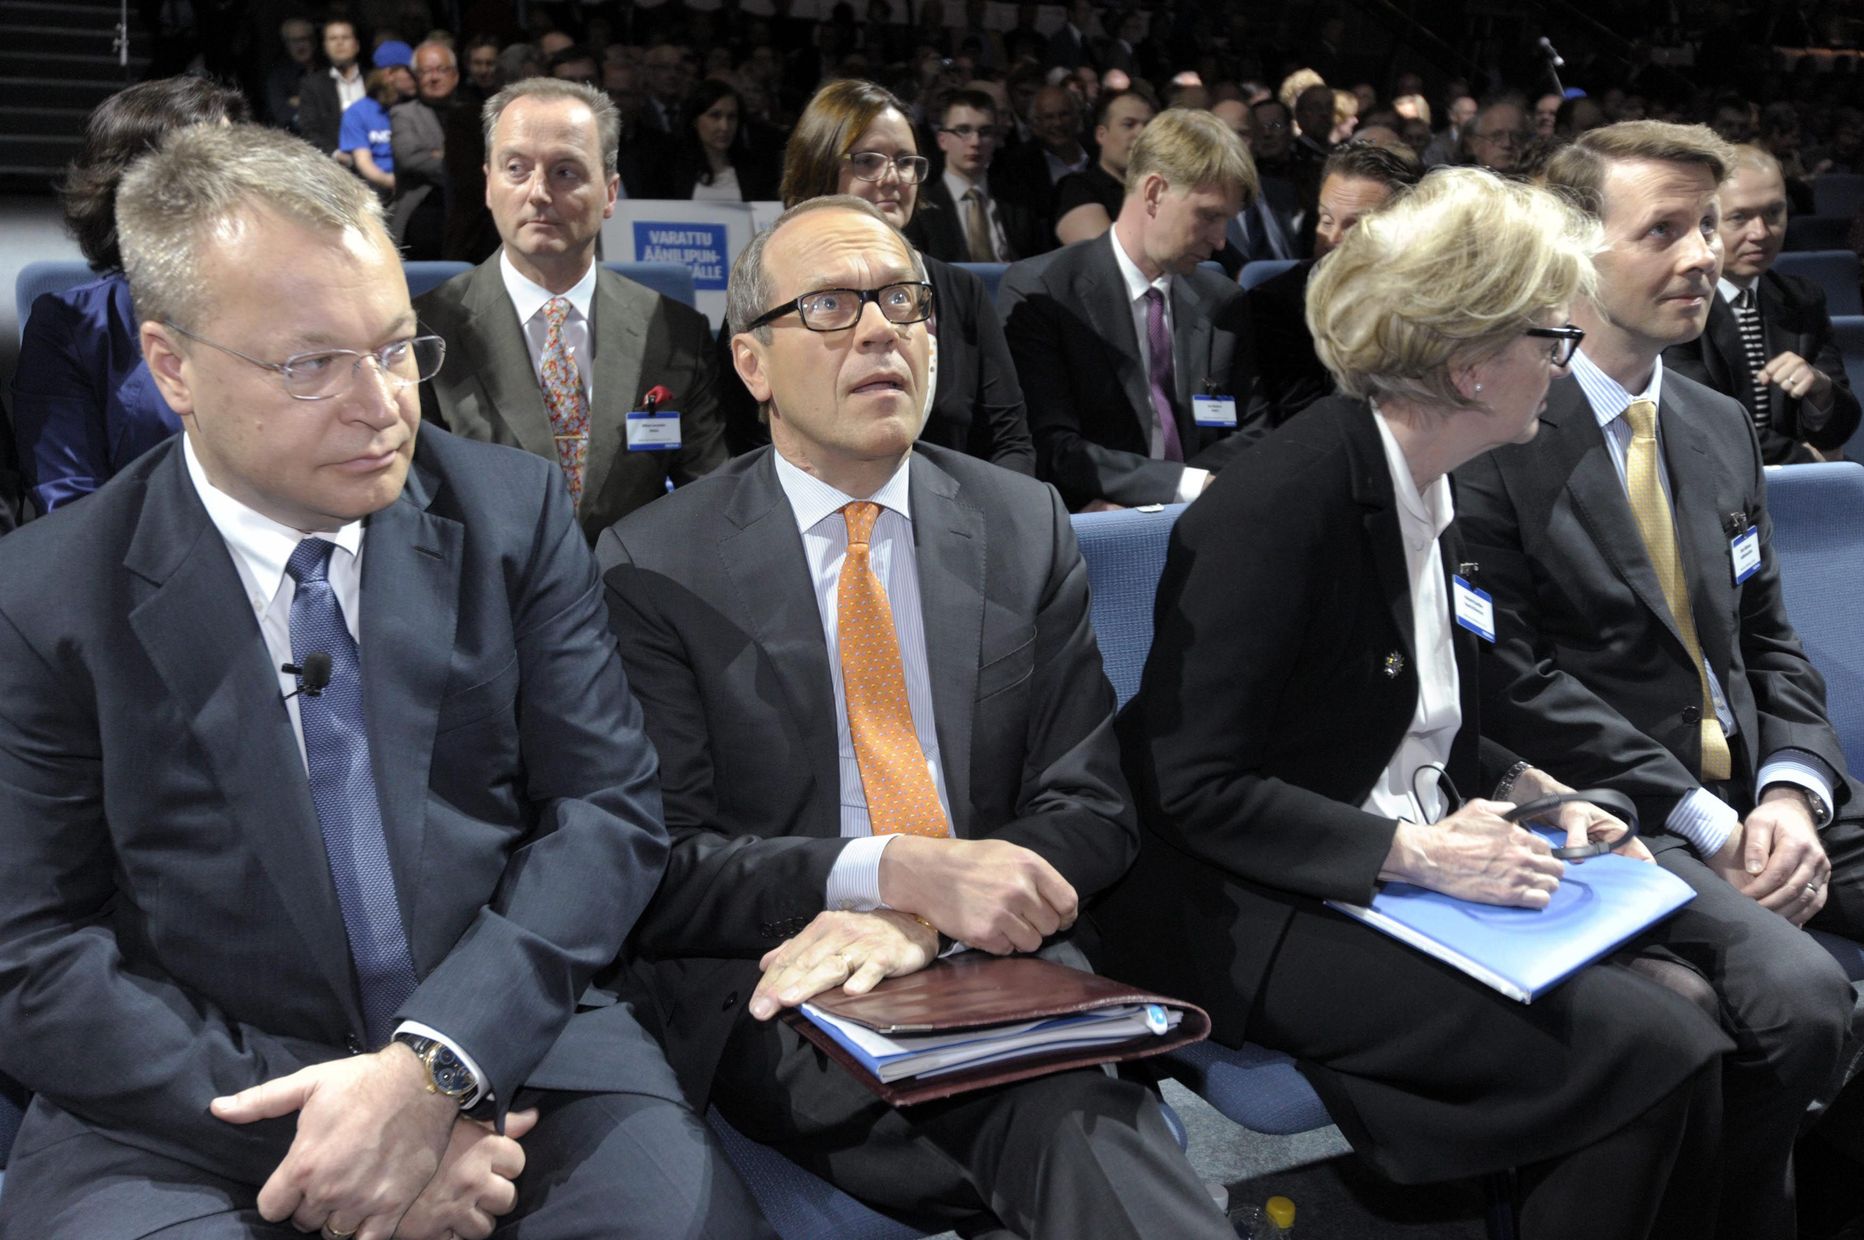 Nokia Tegevjuht Stephen Elop ja lahkuv nõukogu esimees Jorma Ollila aktsionäride üldkoosolekul.